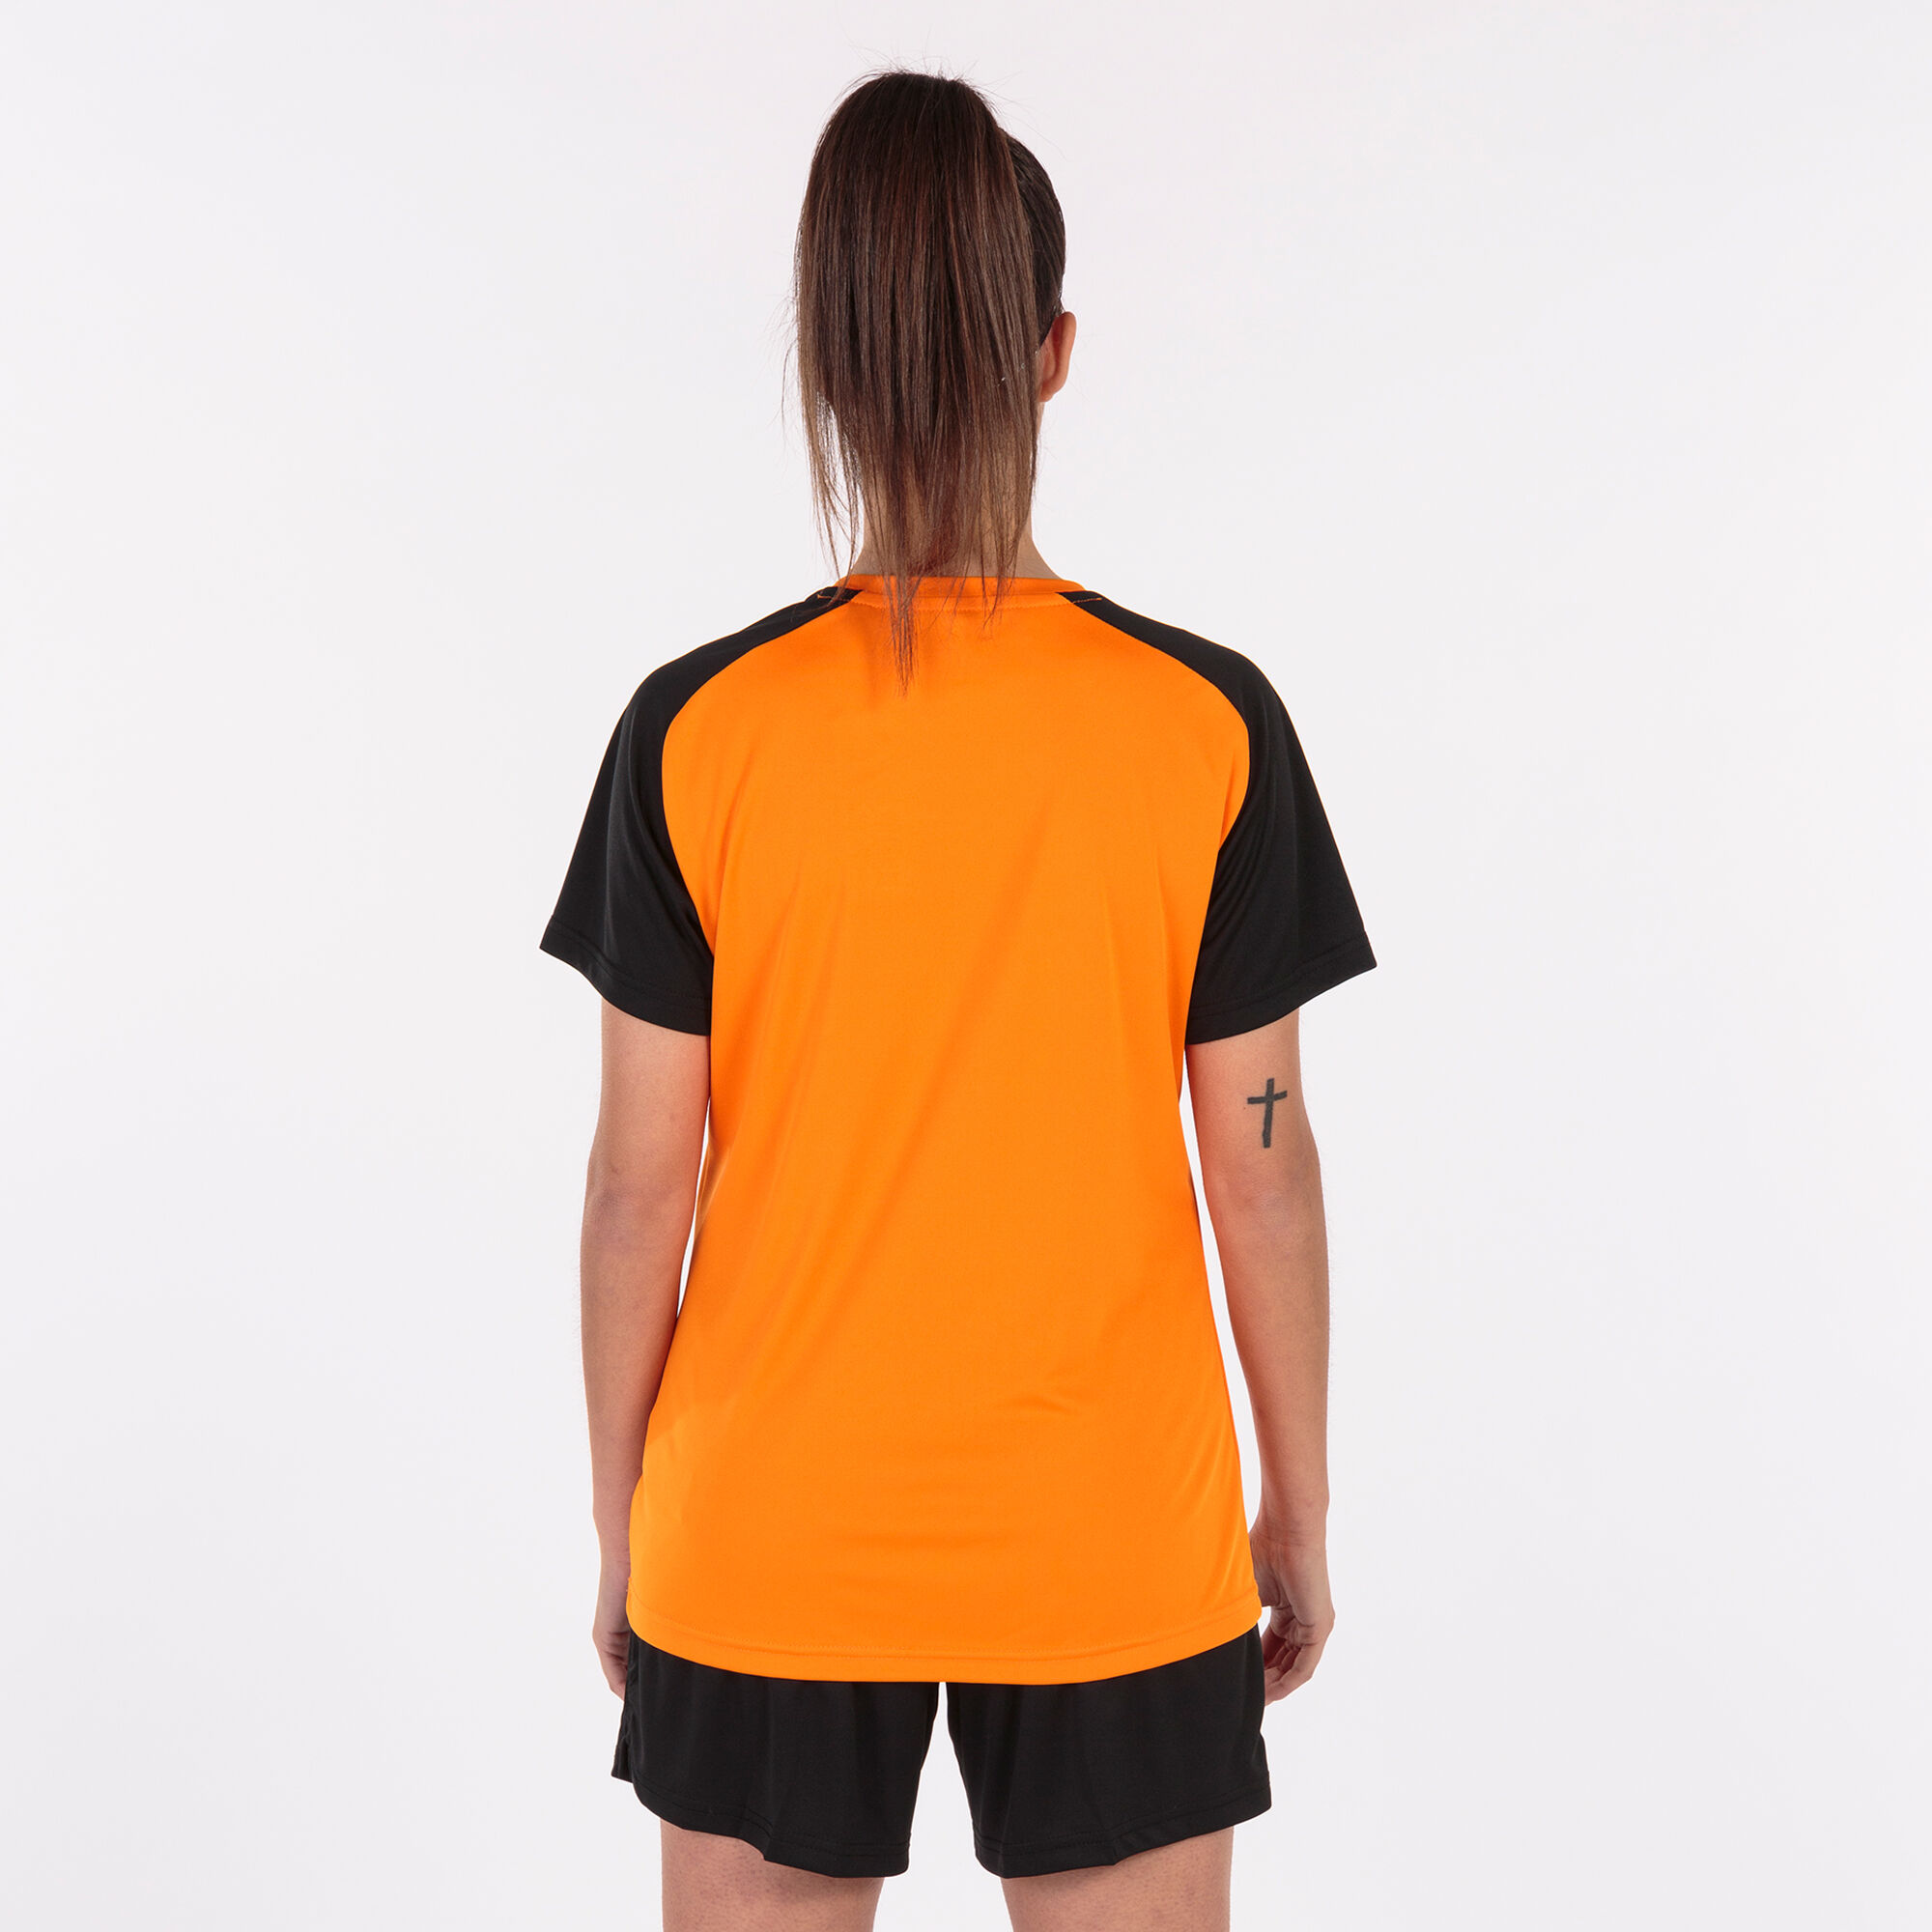 Camiseta manga corta mujer Academy IV naranja negro